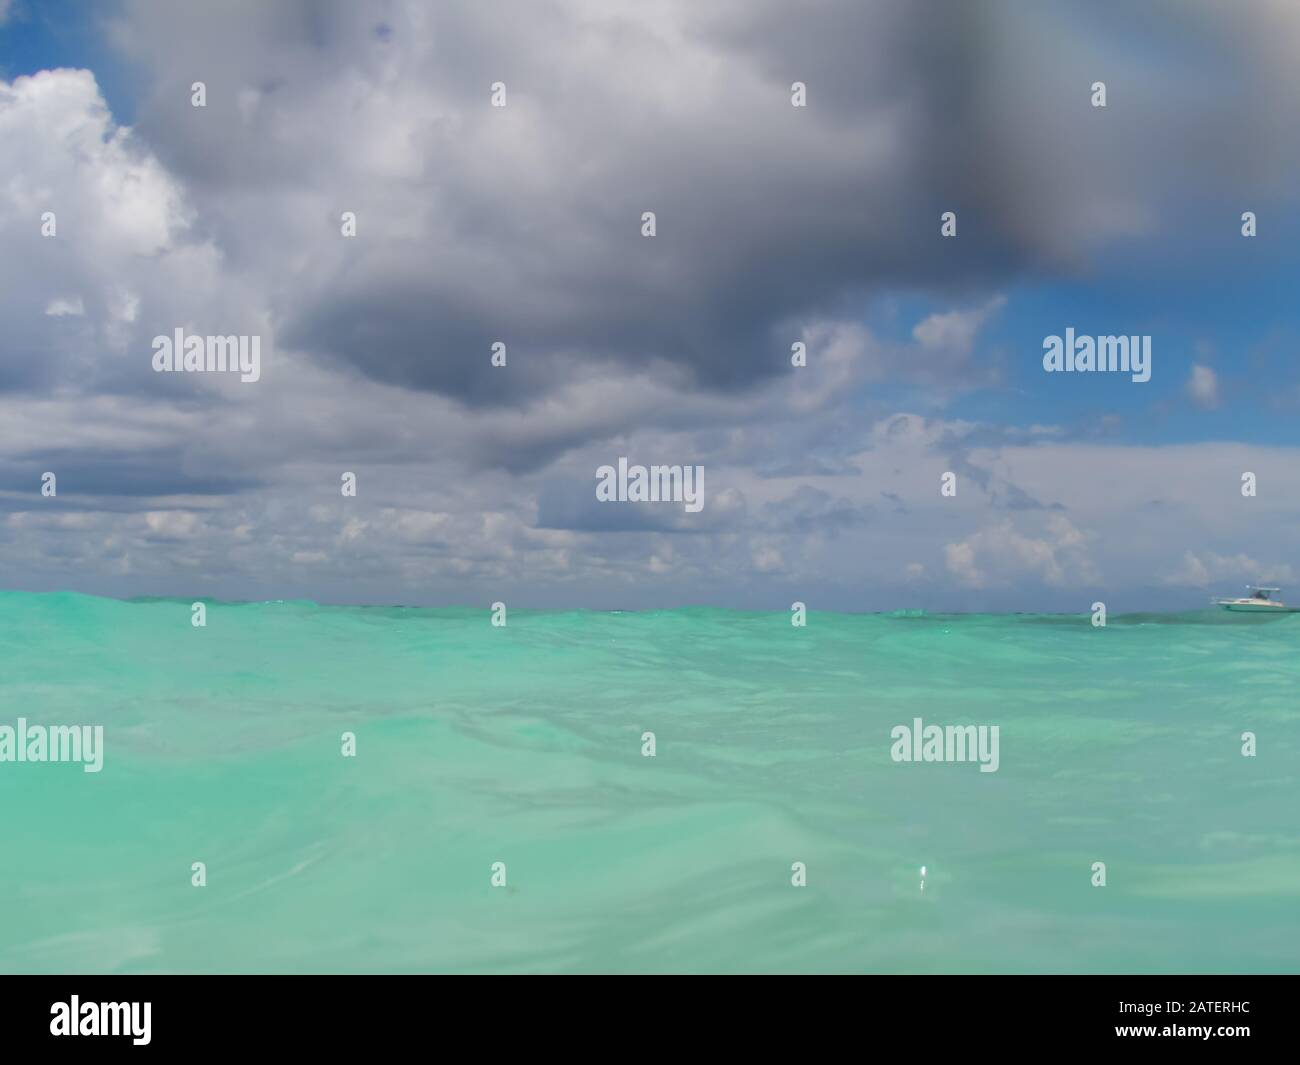 increspature sul mare turchese e cielo nuvoloso all'orizzonte, concetto di freschezza Foto Stock